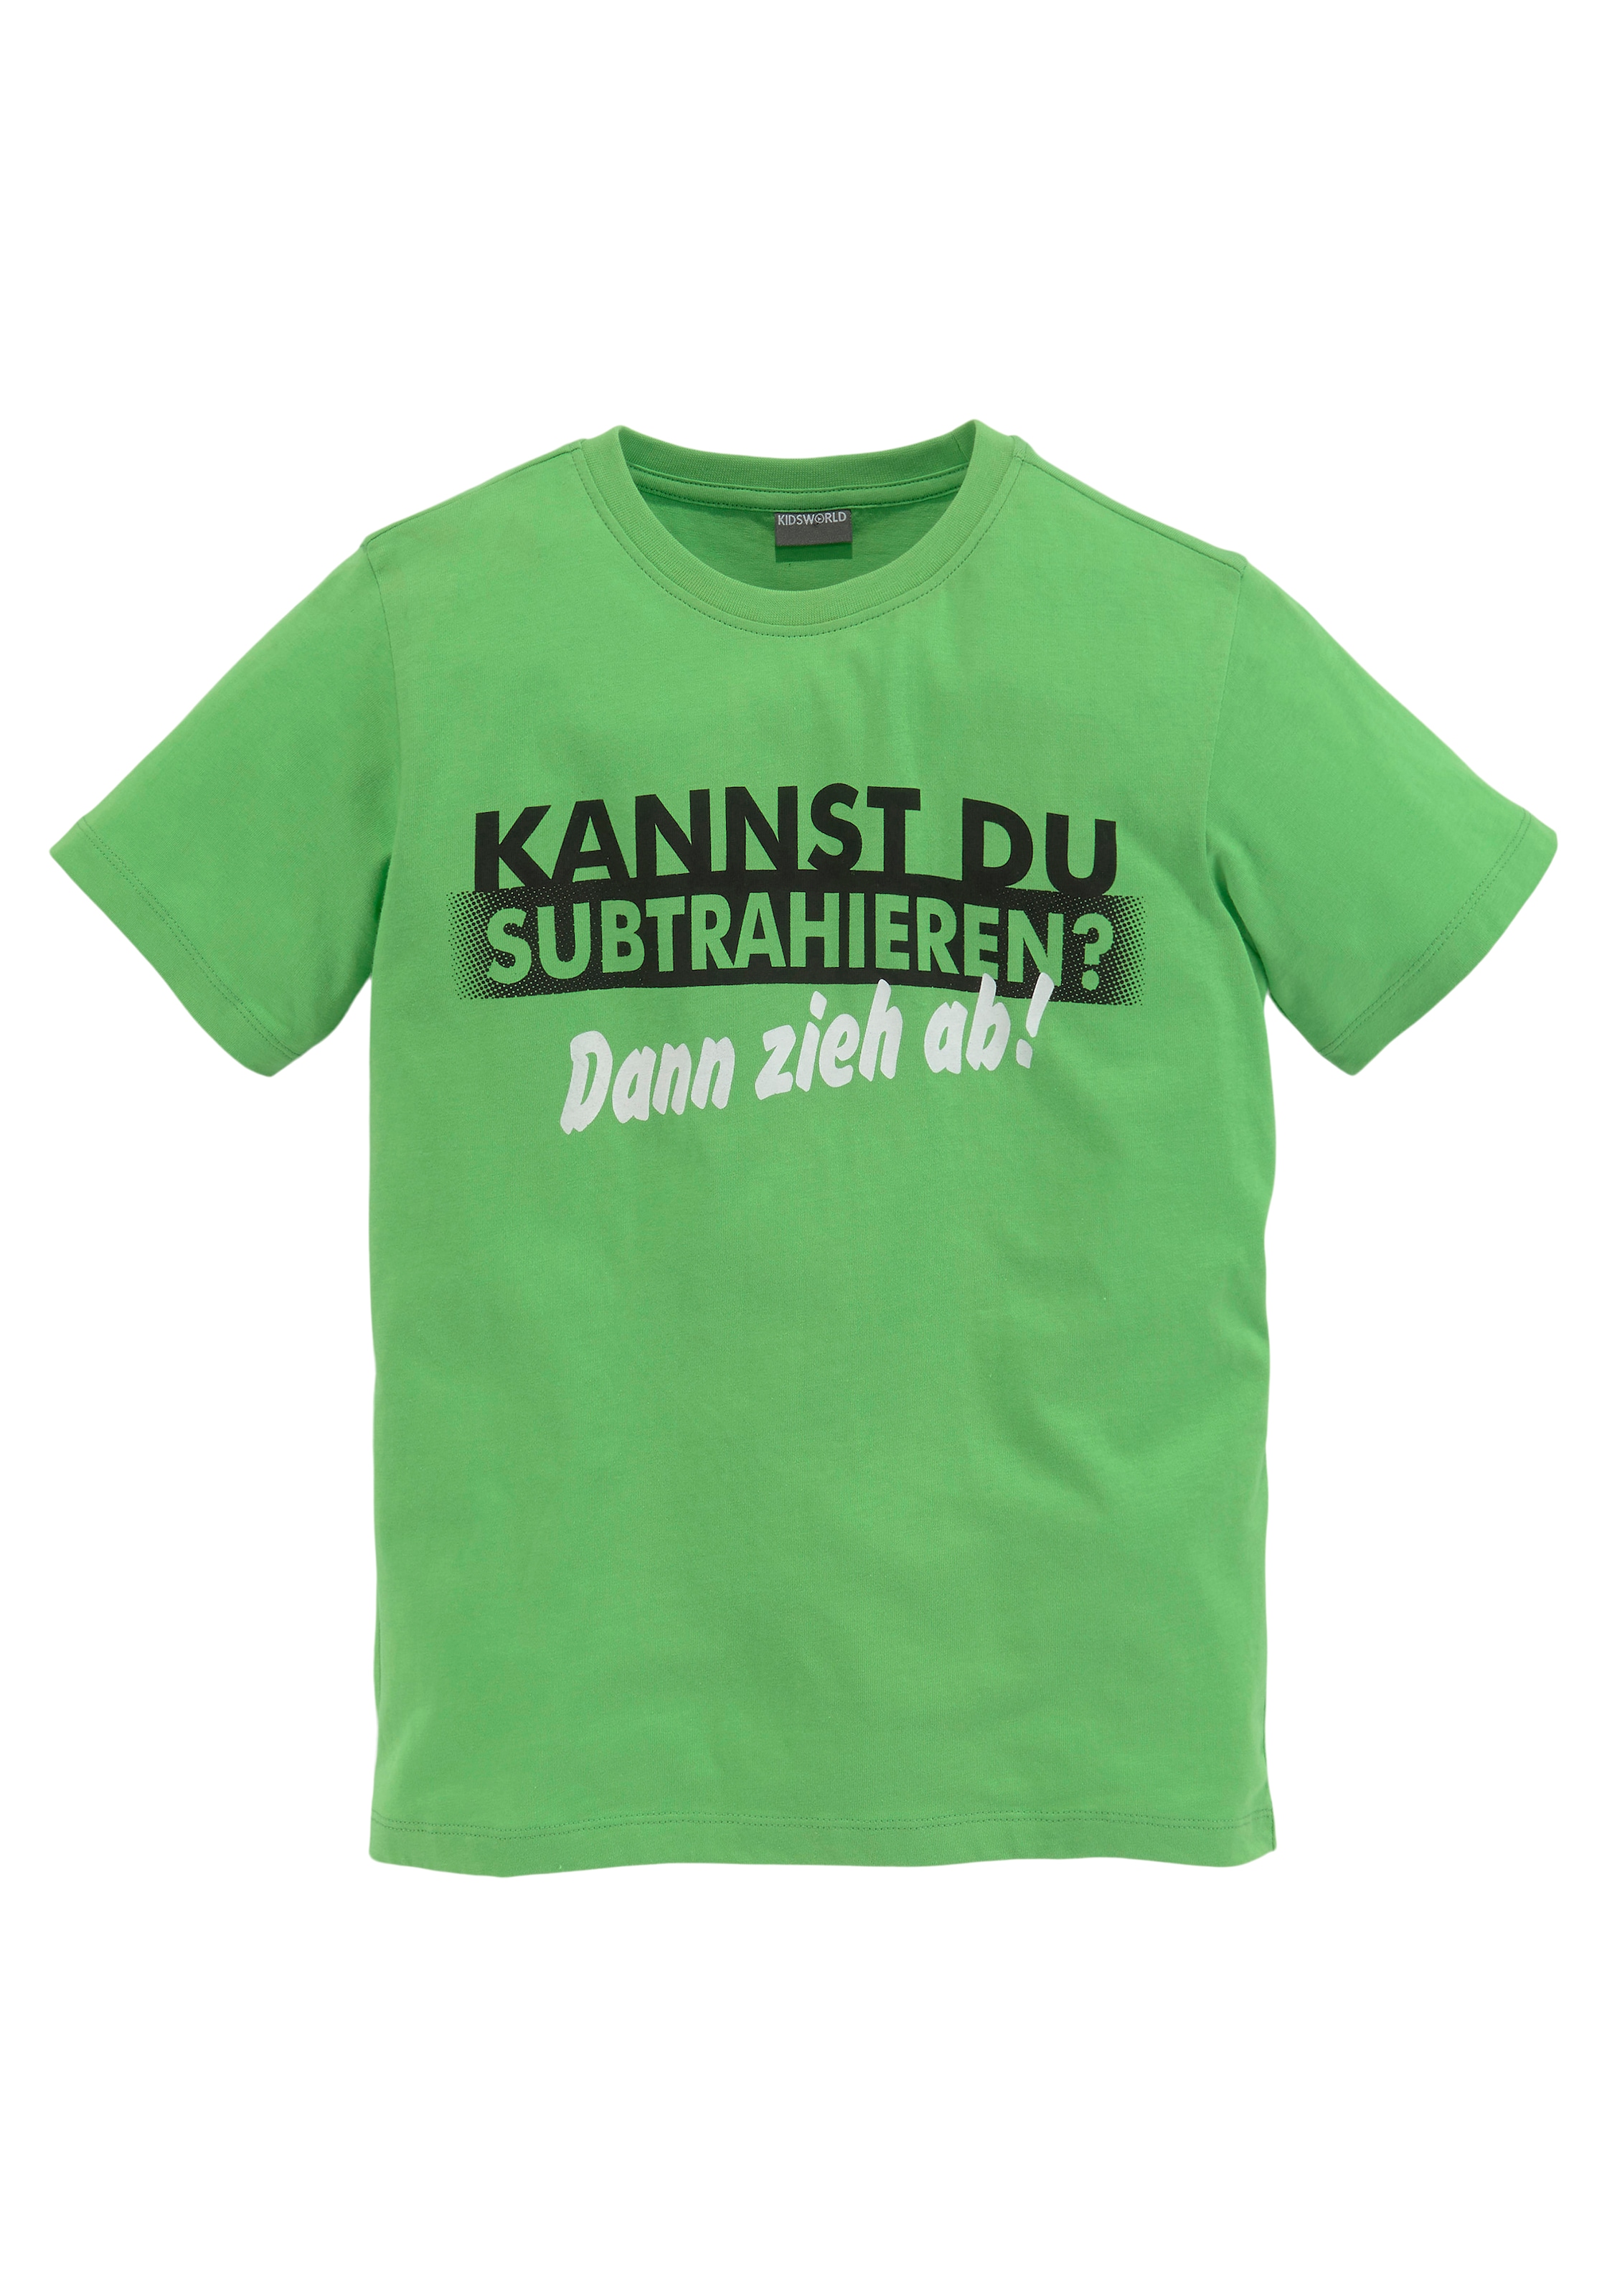 KIDSWORLD bei DU Spruch SUBTRAHIEREN?«, T-Shirt »KANNST